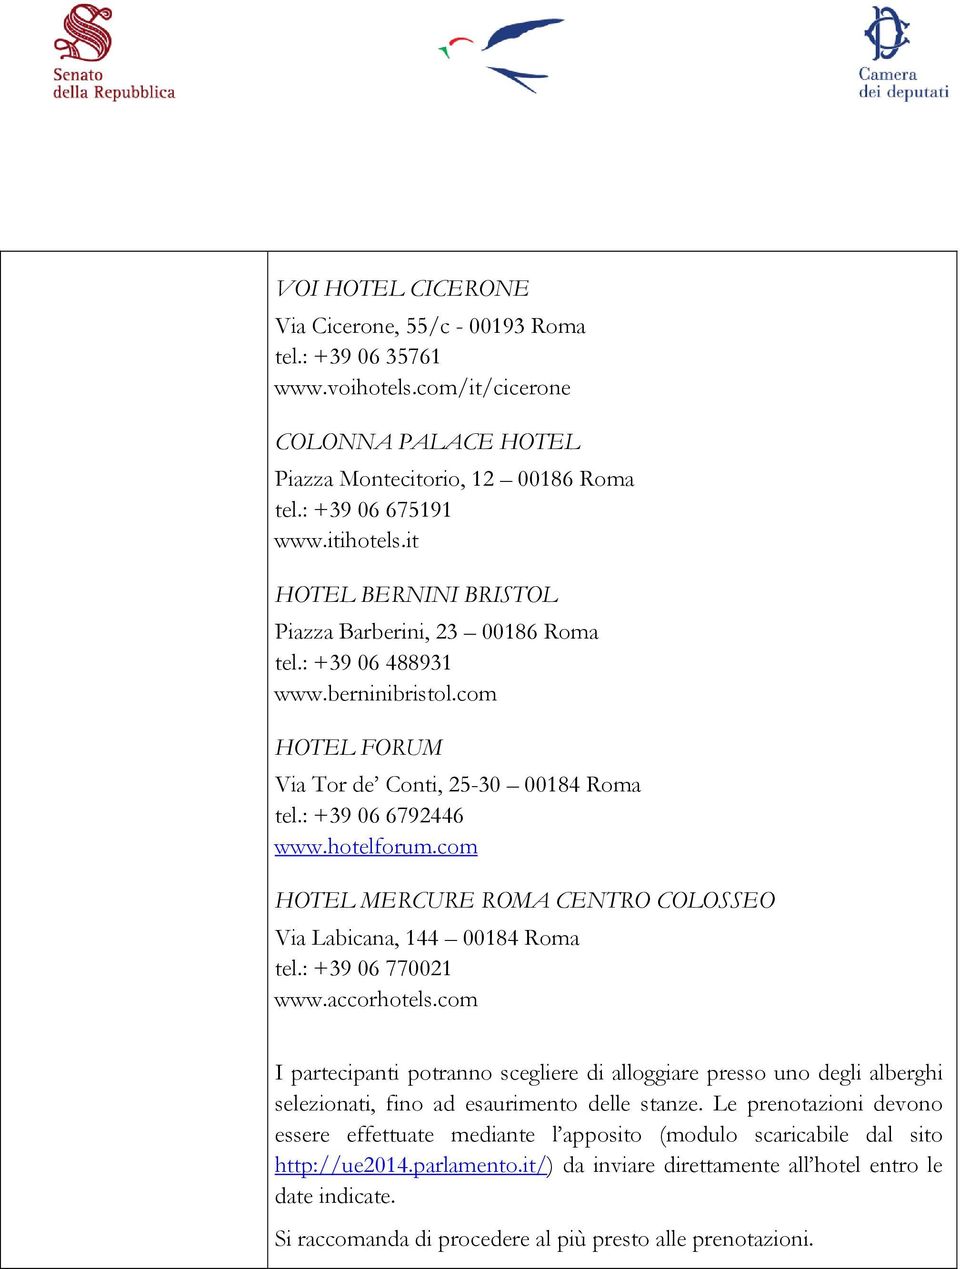 com HOTEL MERCURE ROMA CENTRO COLOSSEO Via Labicana, 144 00184 Roma tel.: +39 06 770021 www.accorhotels.